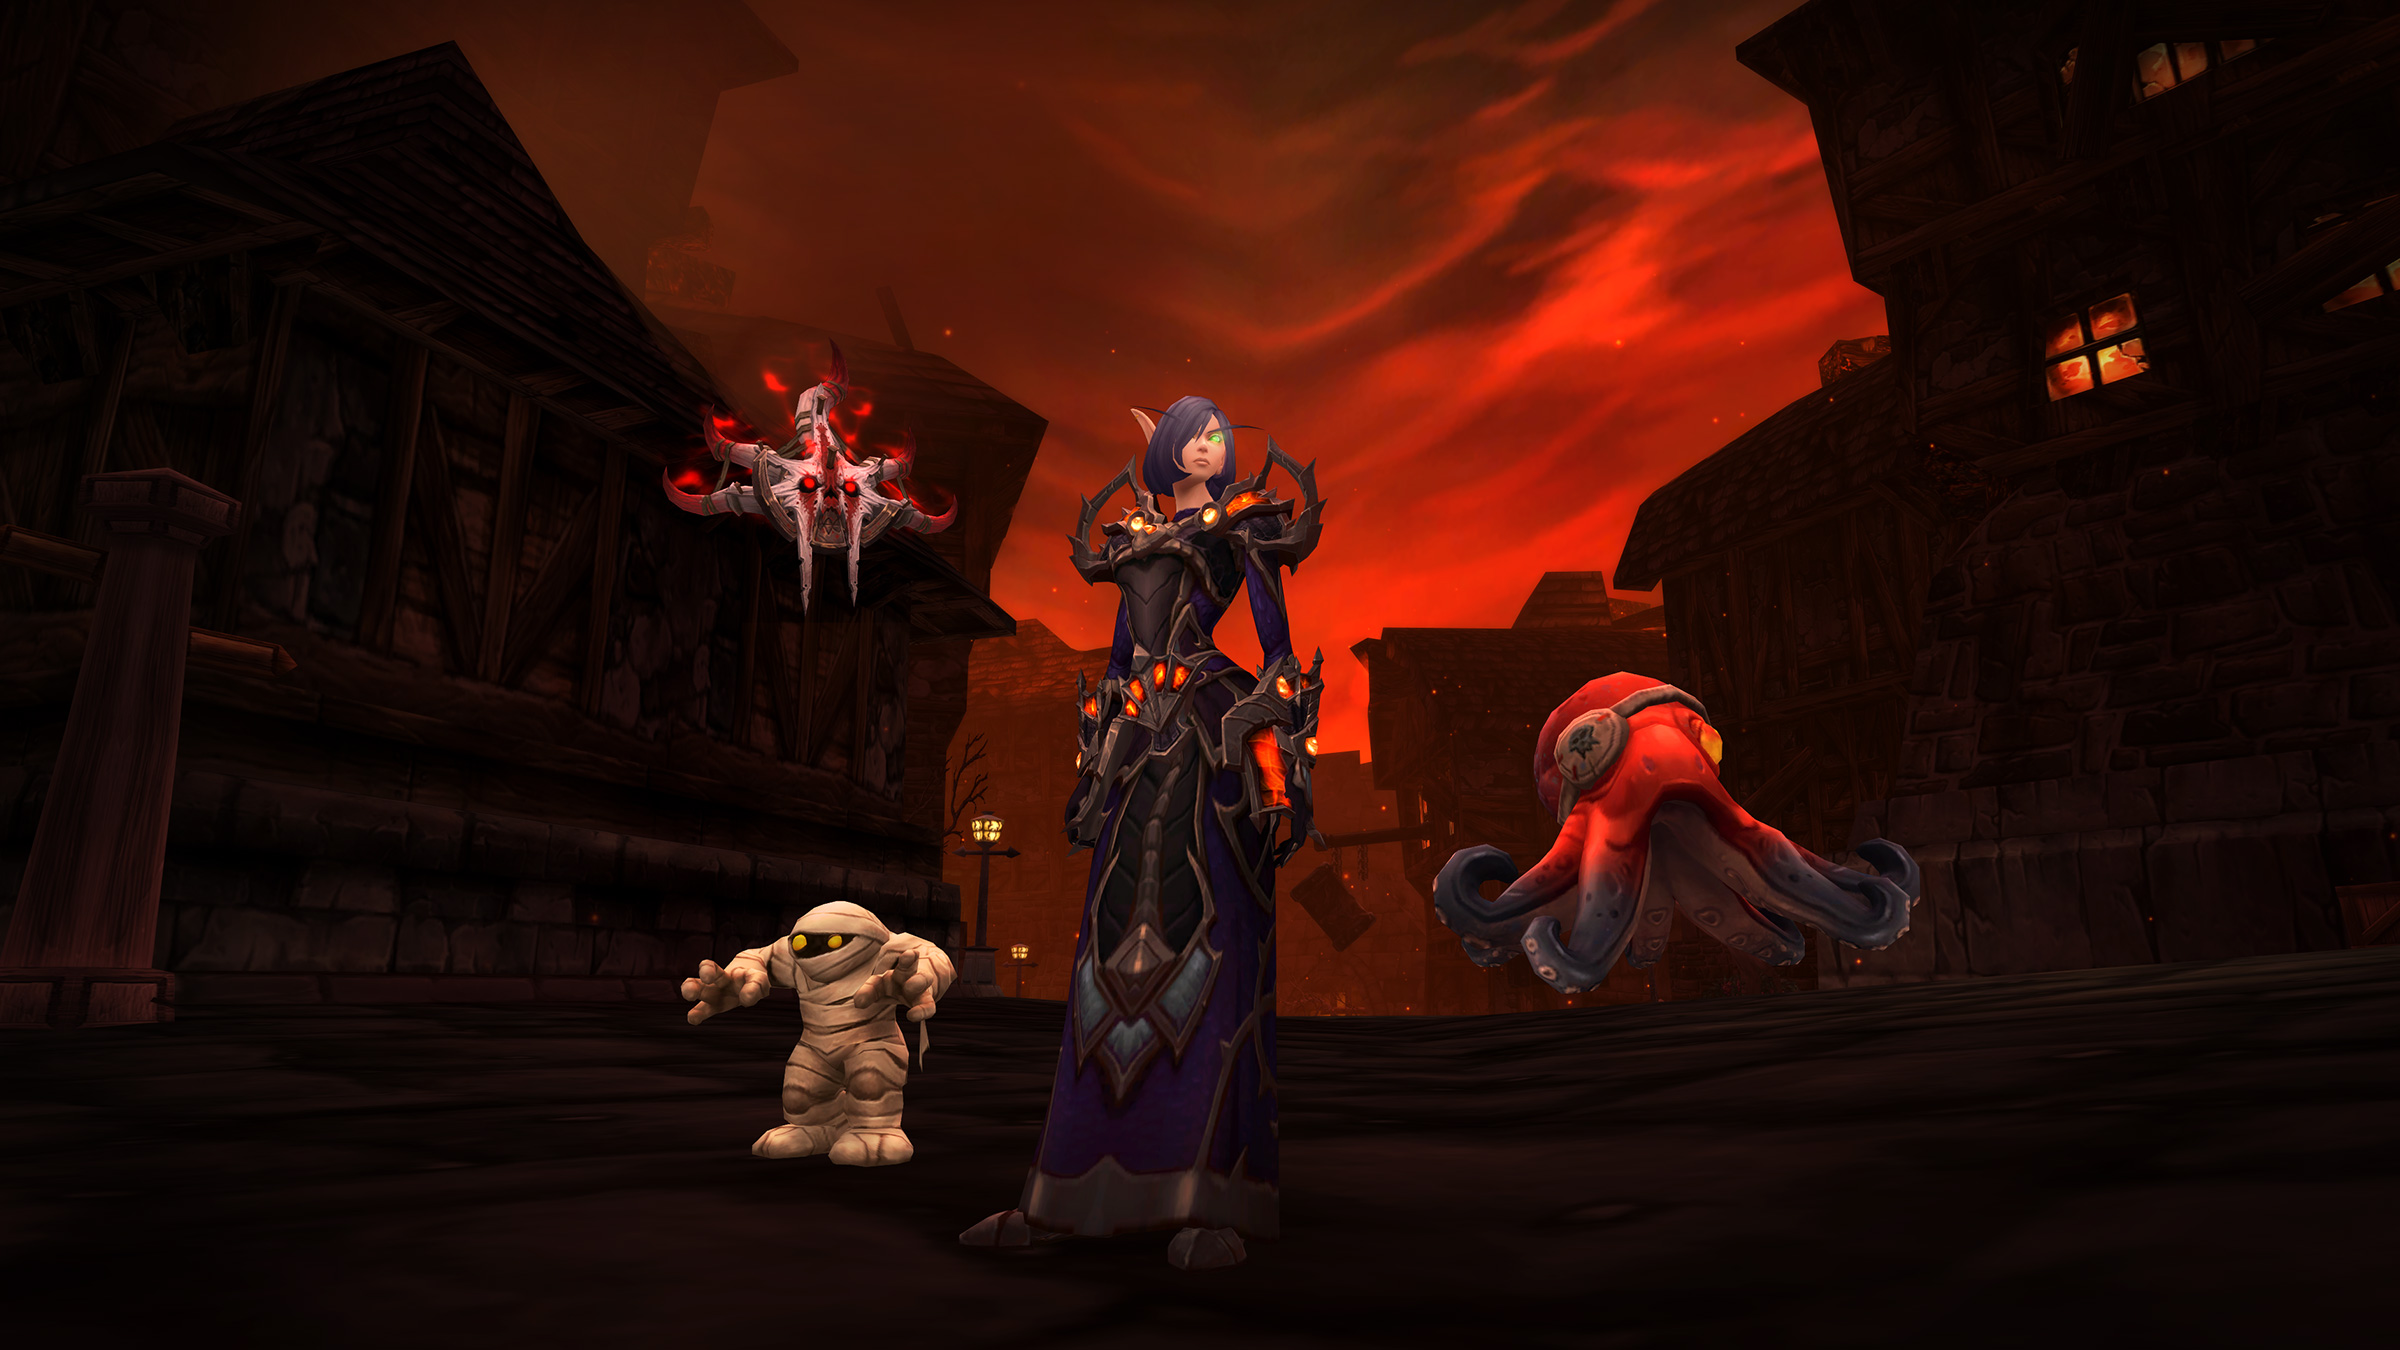 World of Warcraft's next pet battle dungeon is Stratholme